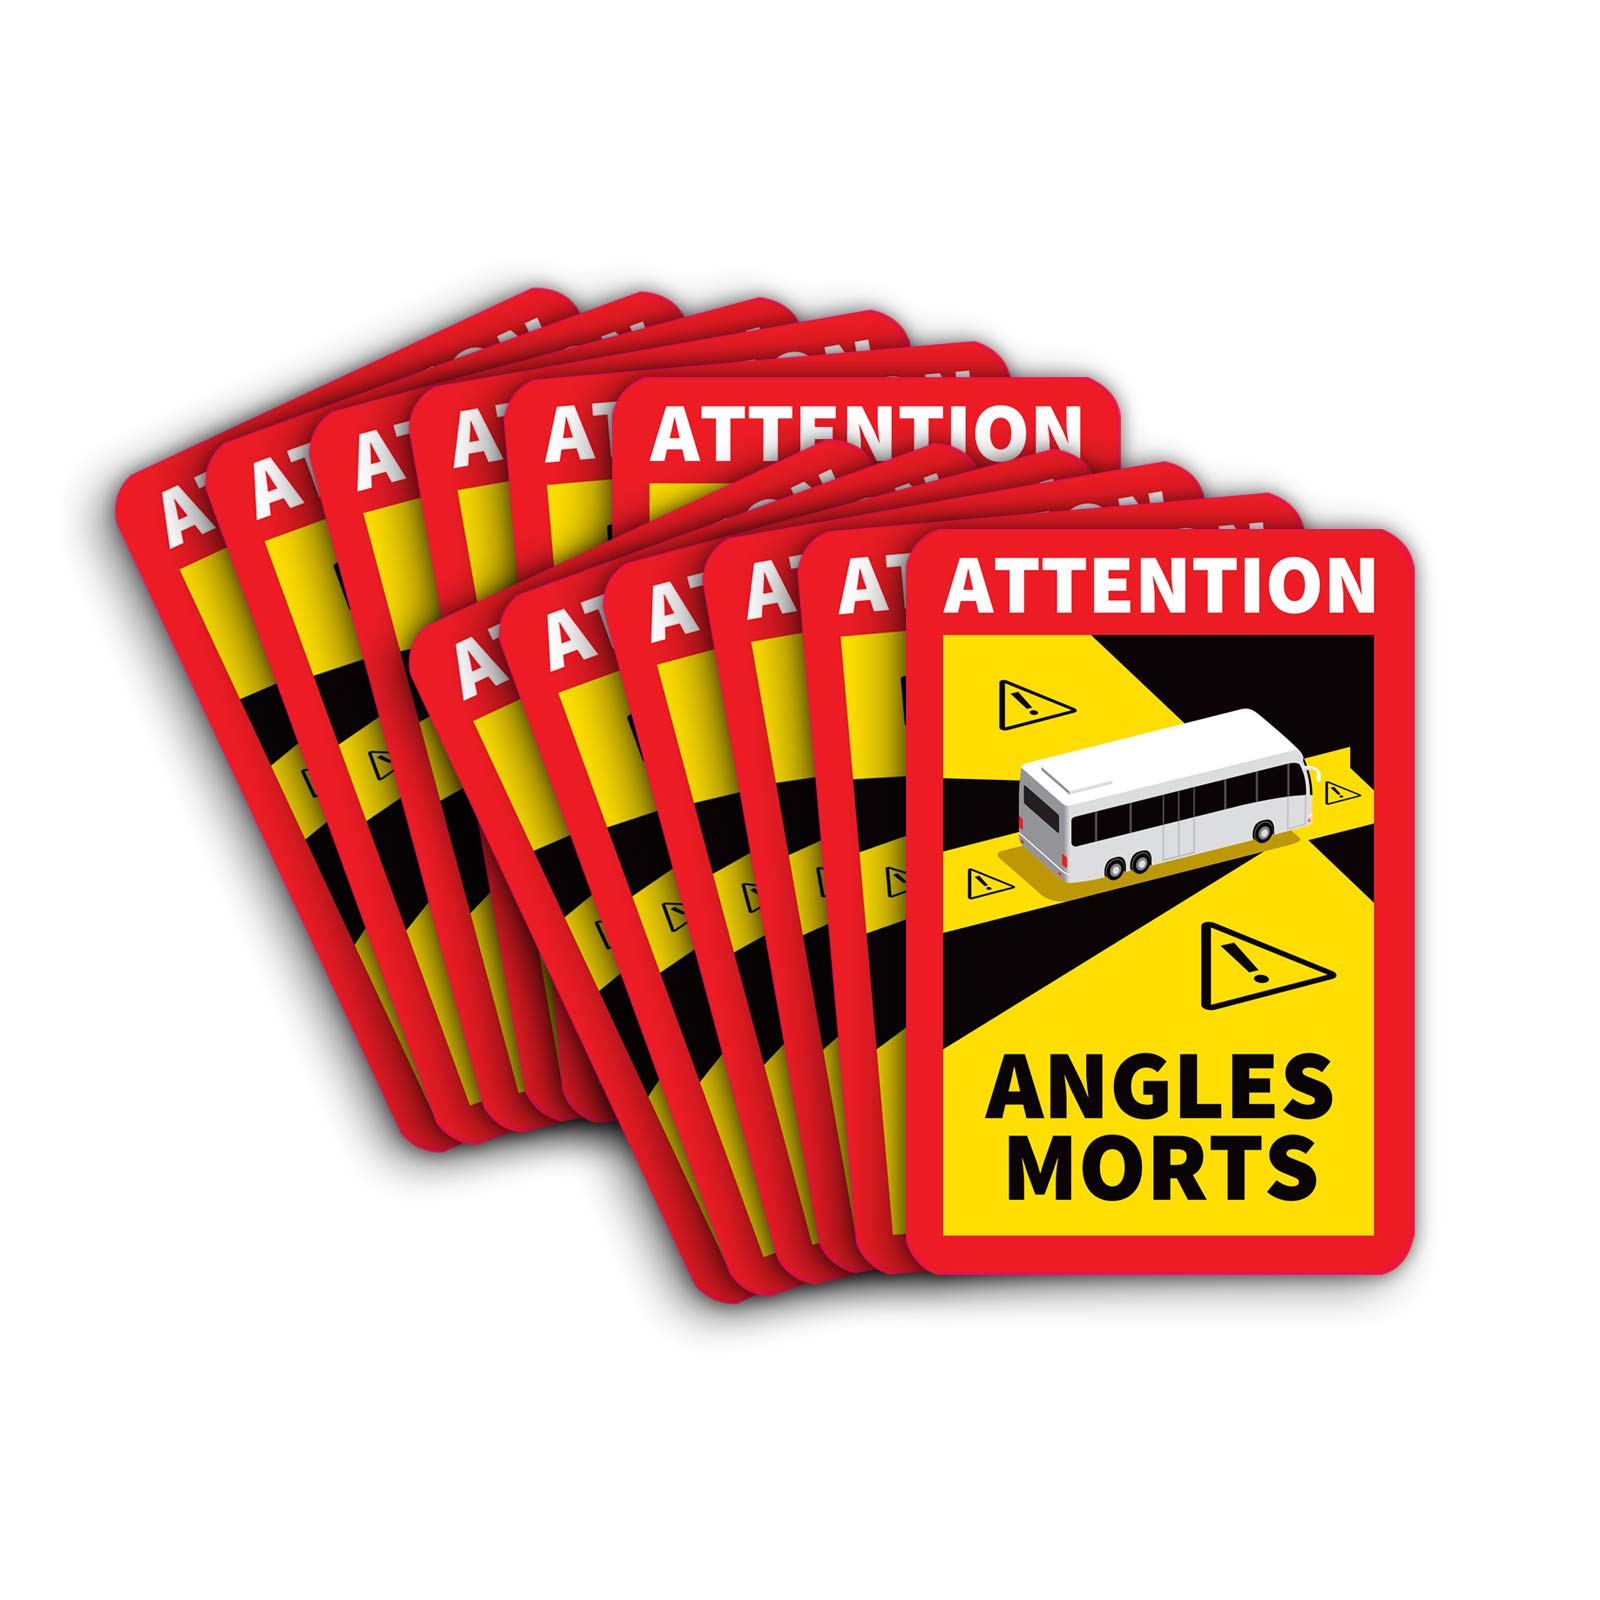 12 Stück Attention Angles Morts Magnetschilder 25 x 17 cm Magnet für LKW und Wohnwagen Warntafel Hinweiszeichen Schild Frankreich mit UV Schutz von STROBO